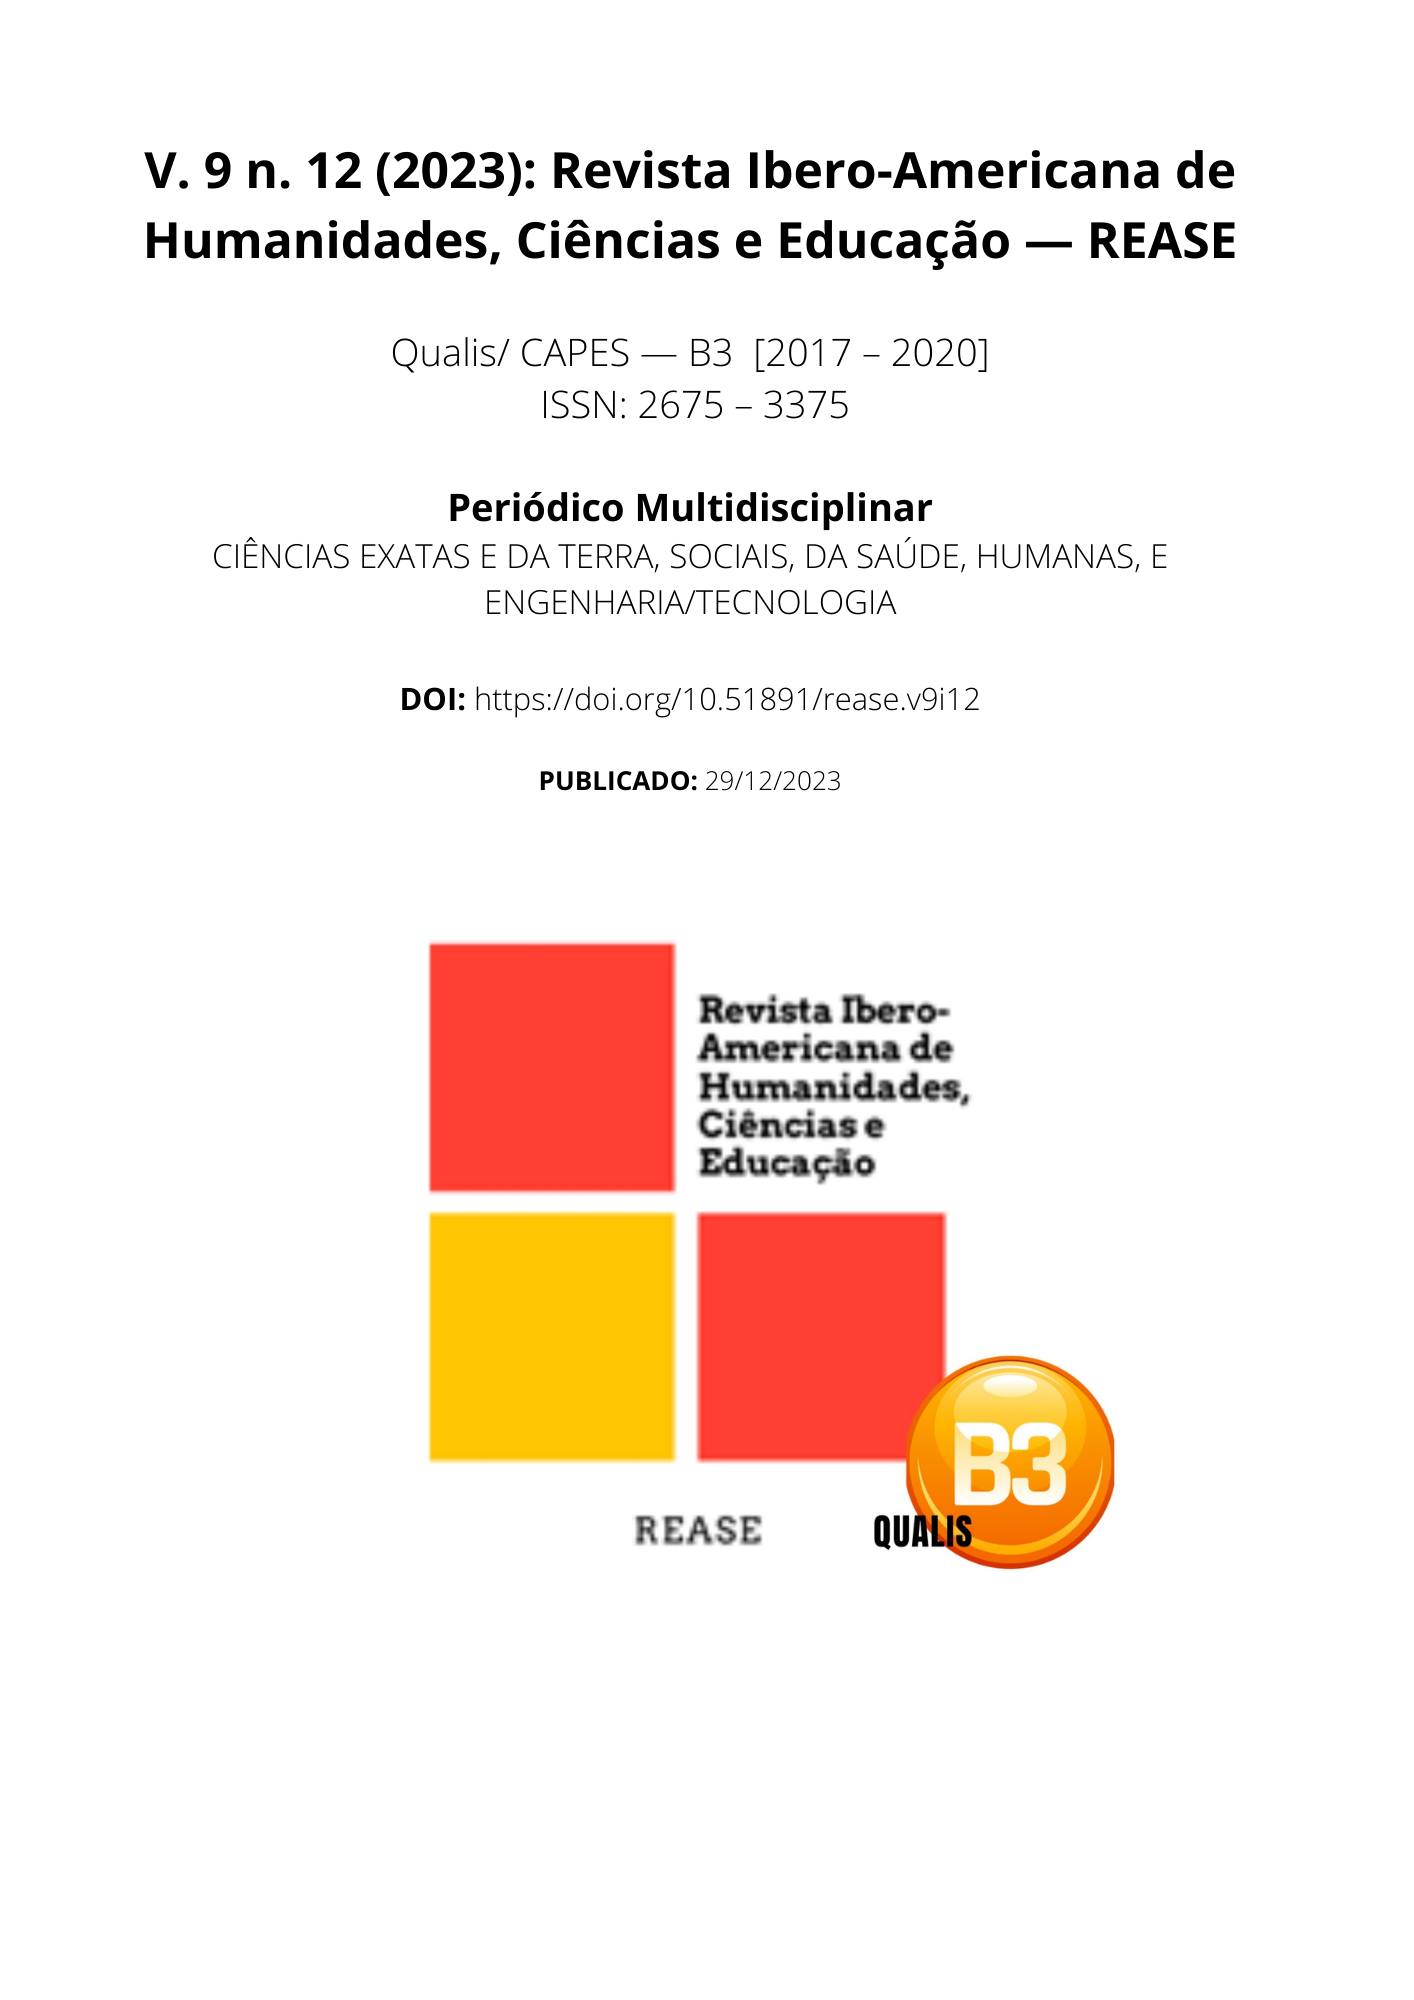 					View Vol. 9 No. 12 (2023): Revista Ibero-Americana de Humanidades, Ciências e Educação- REASE 
				